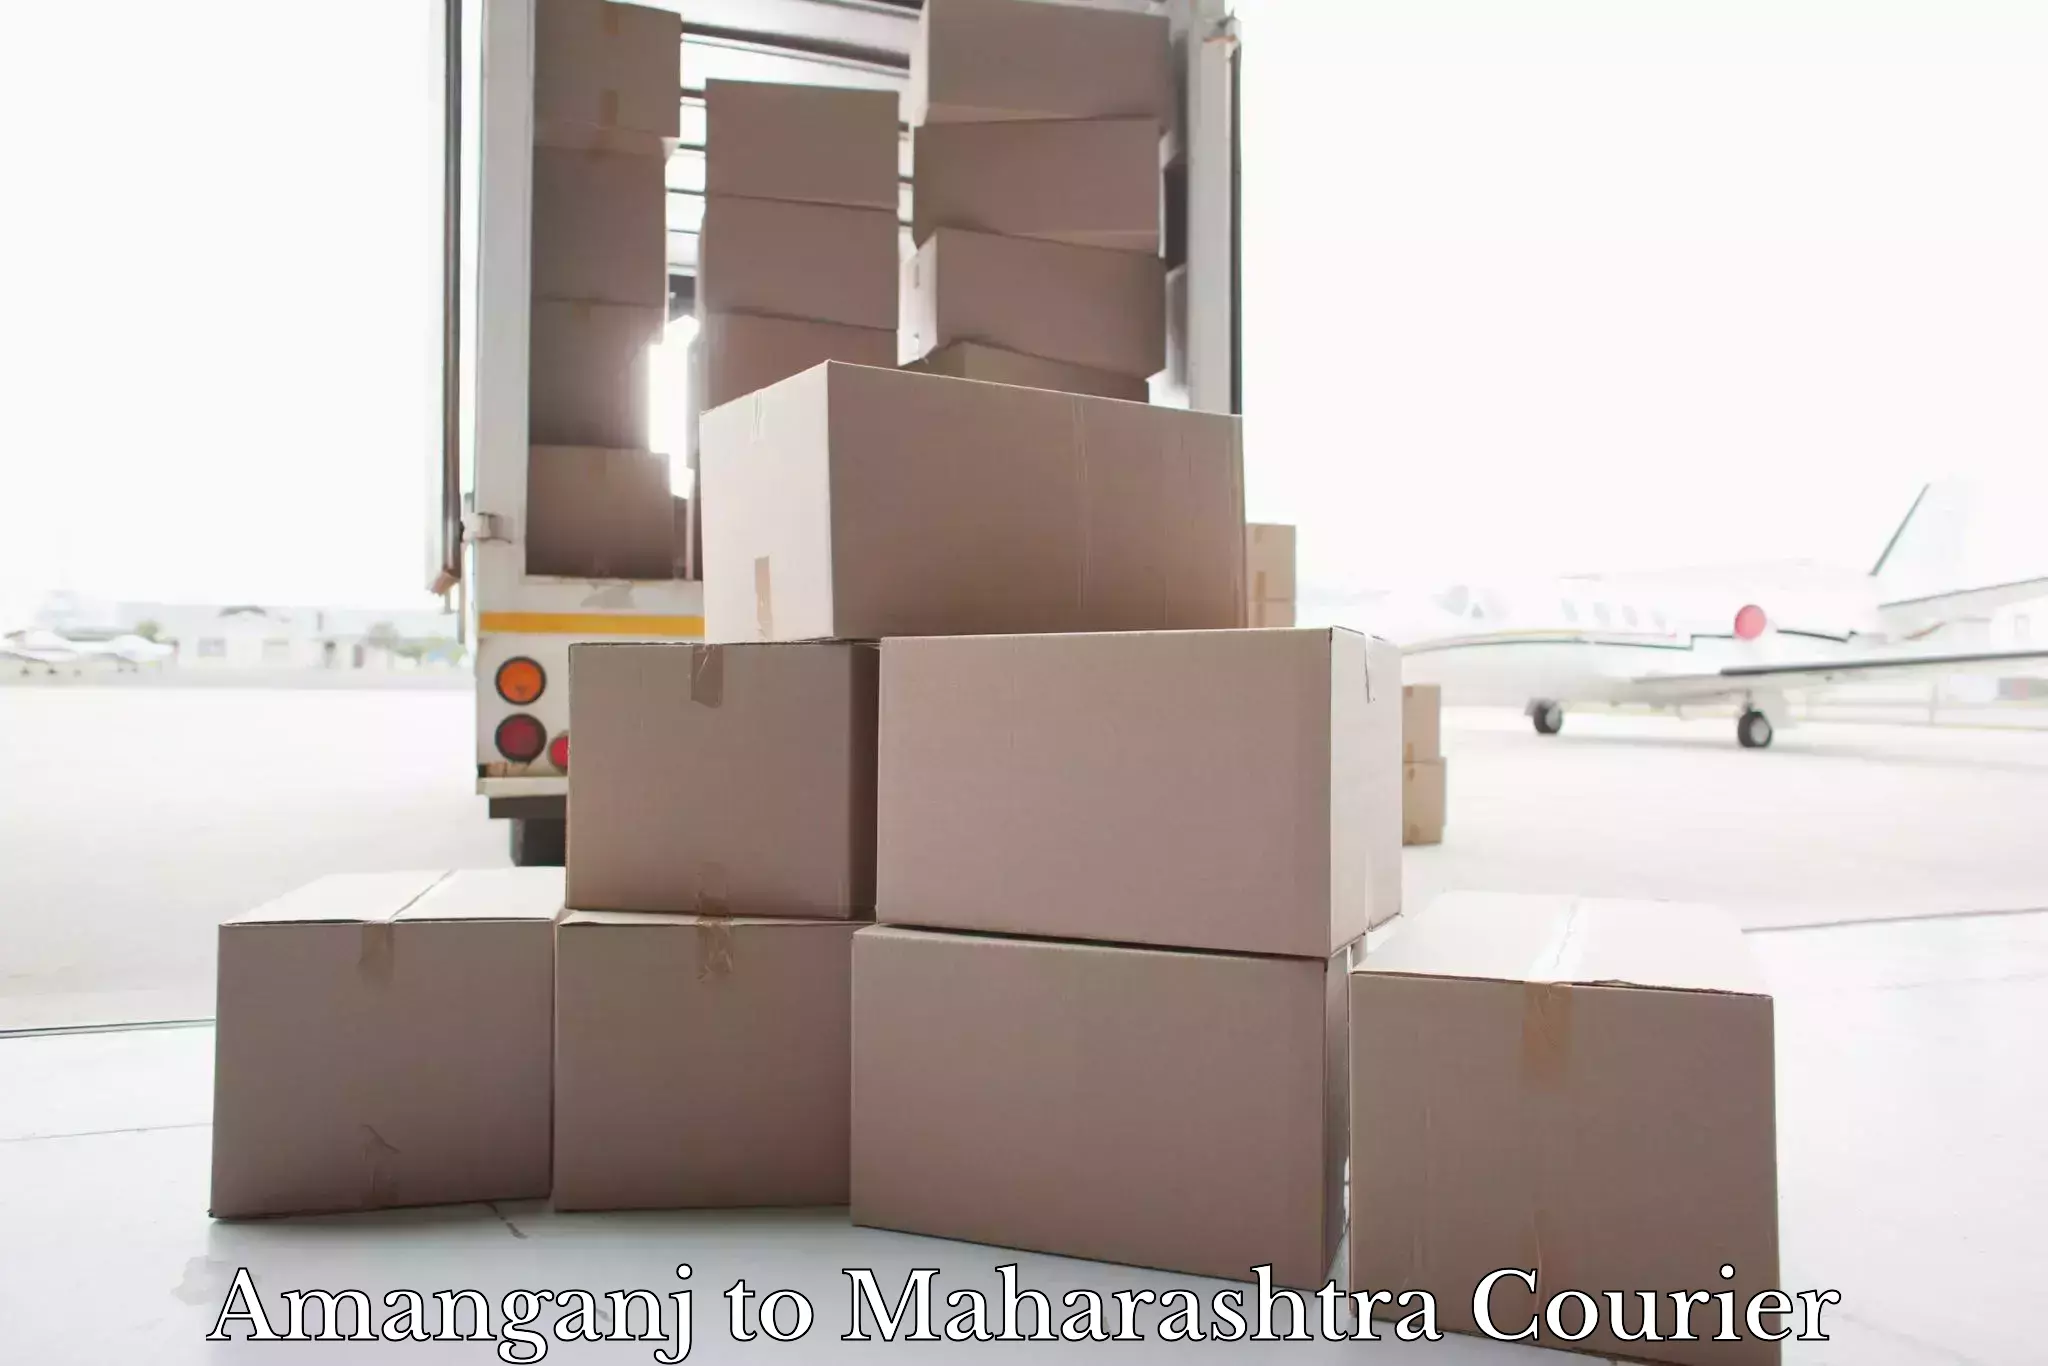 Luggage shipment specialists Amanganj to Maharashtra